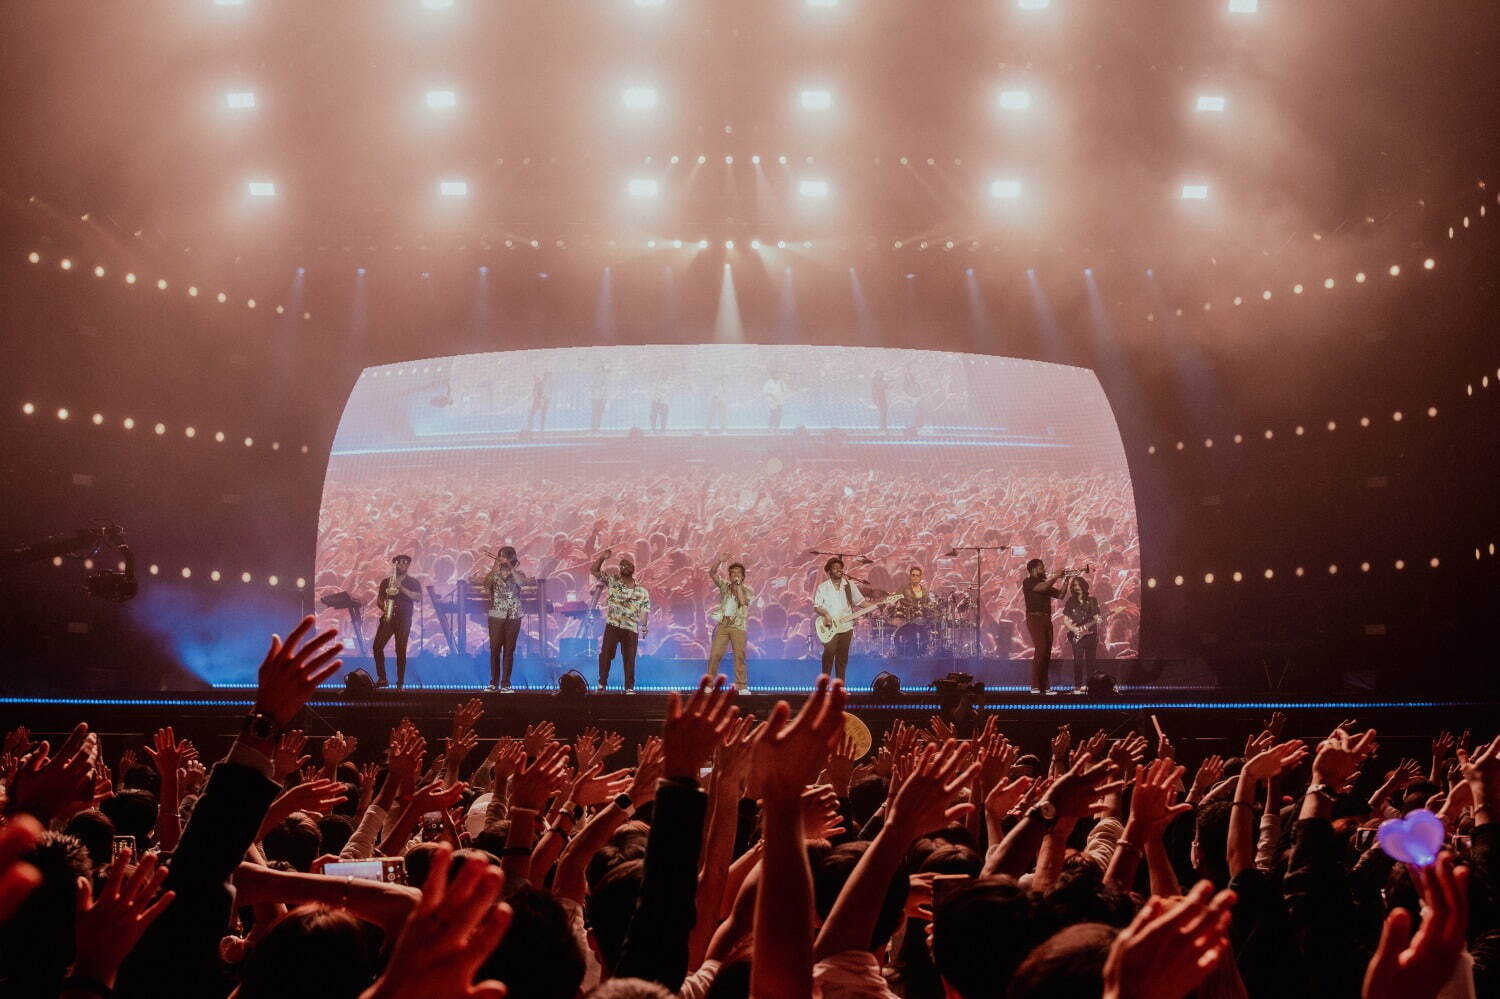 ブルーノ・マーズの来日公演が東京ドームで24年1月に開催、ヒット曲 